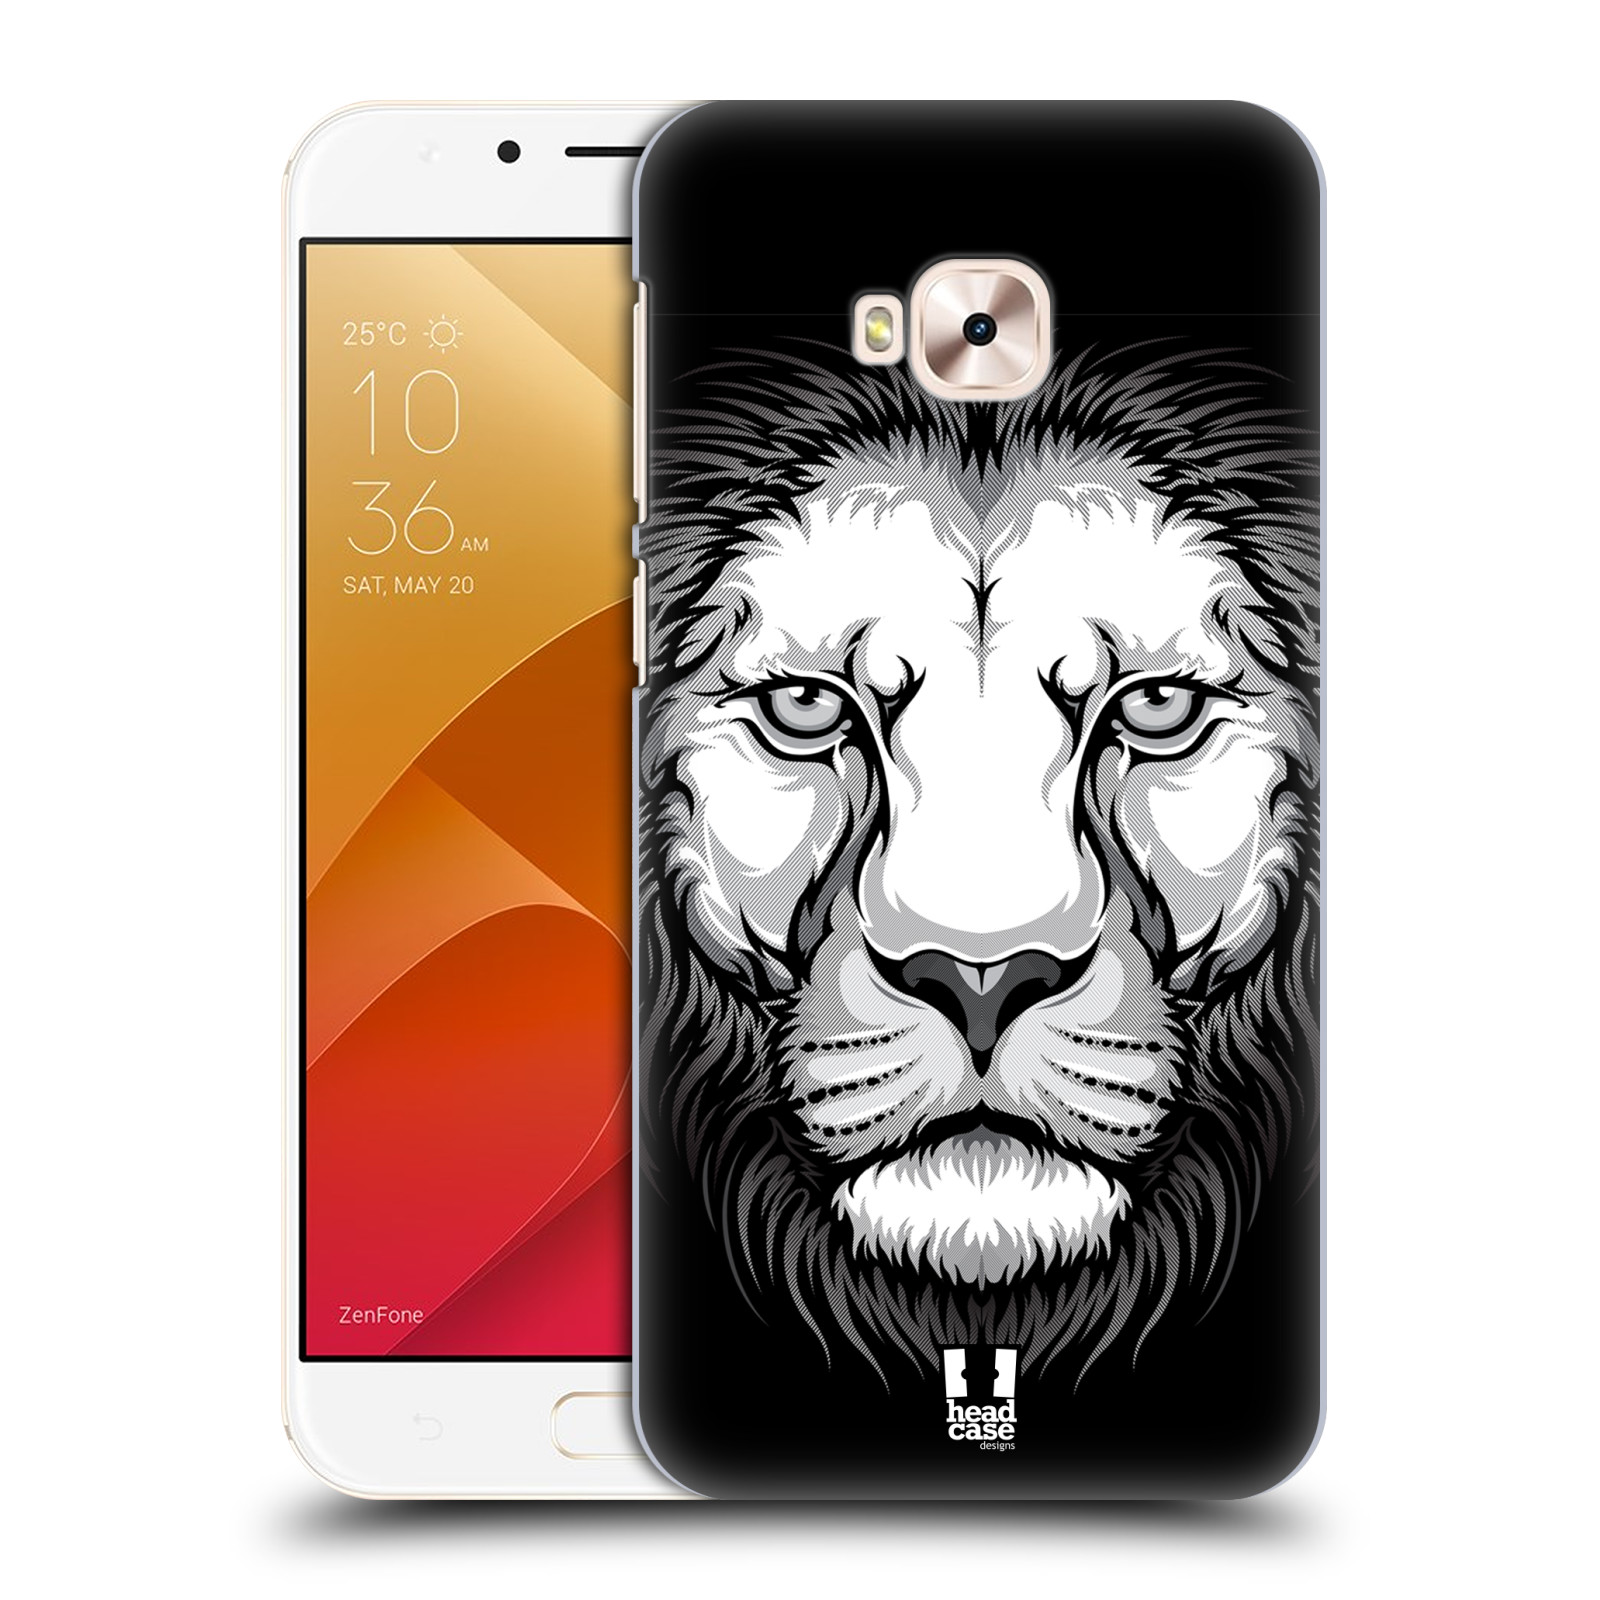 HEAD CASE plastový obal na mobil Asus Zenfone 4 Selfie Pro ZD552KL vzor Zvíře kreslená tvář lev